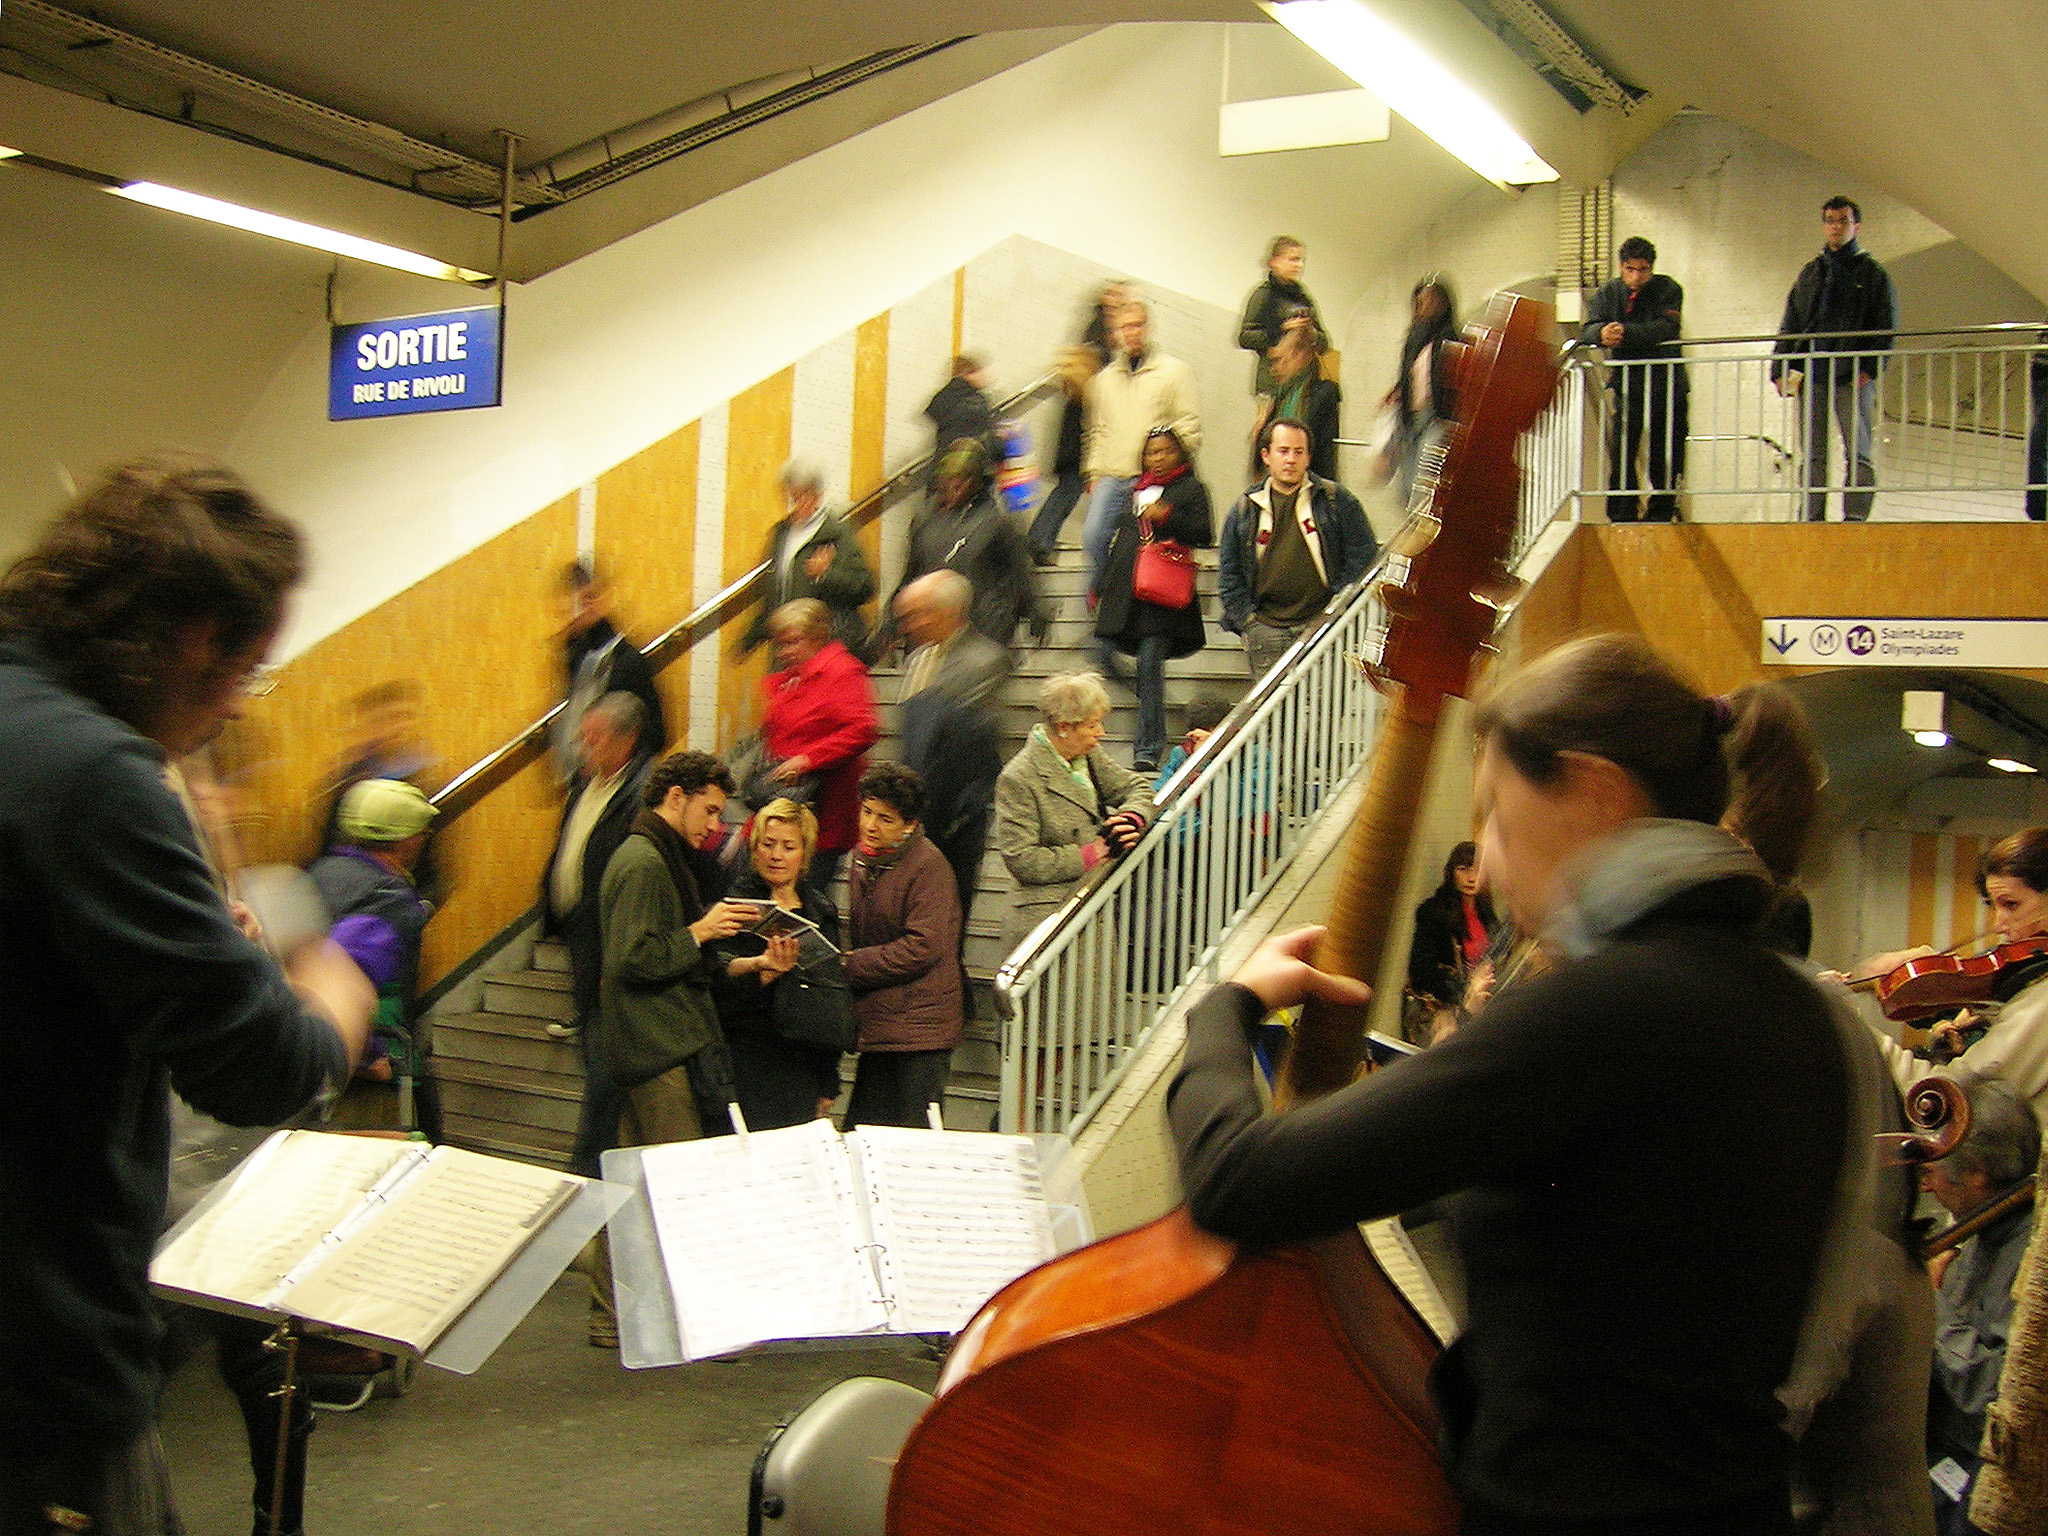 Em primeiro plano um músico de costas toca um violoncelo. Ao fundo uma mulher toca violino. Pessoas descem a escada e três pessoas conversam paradas